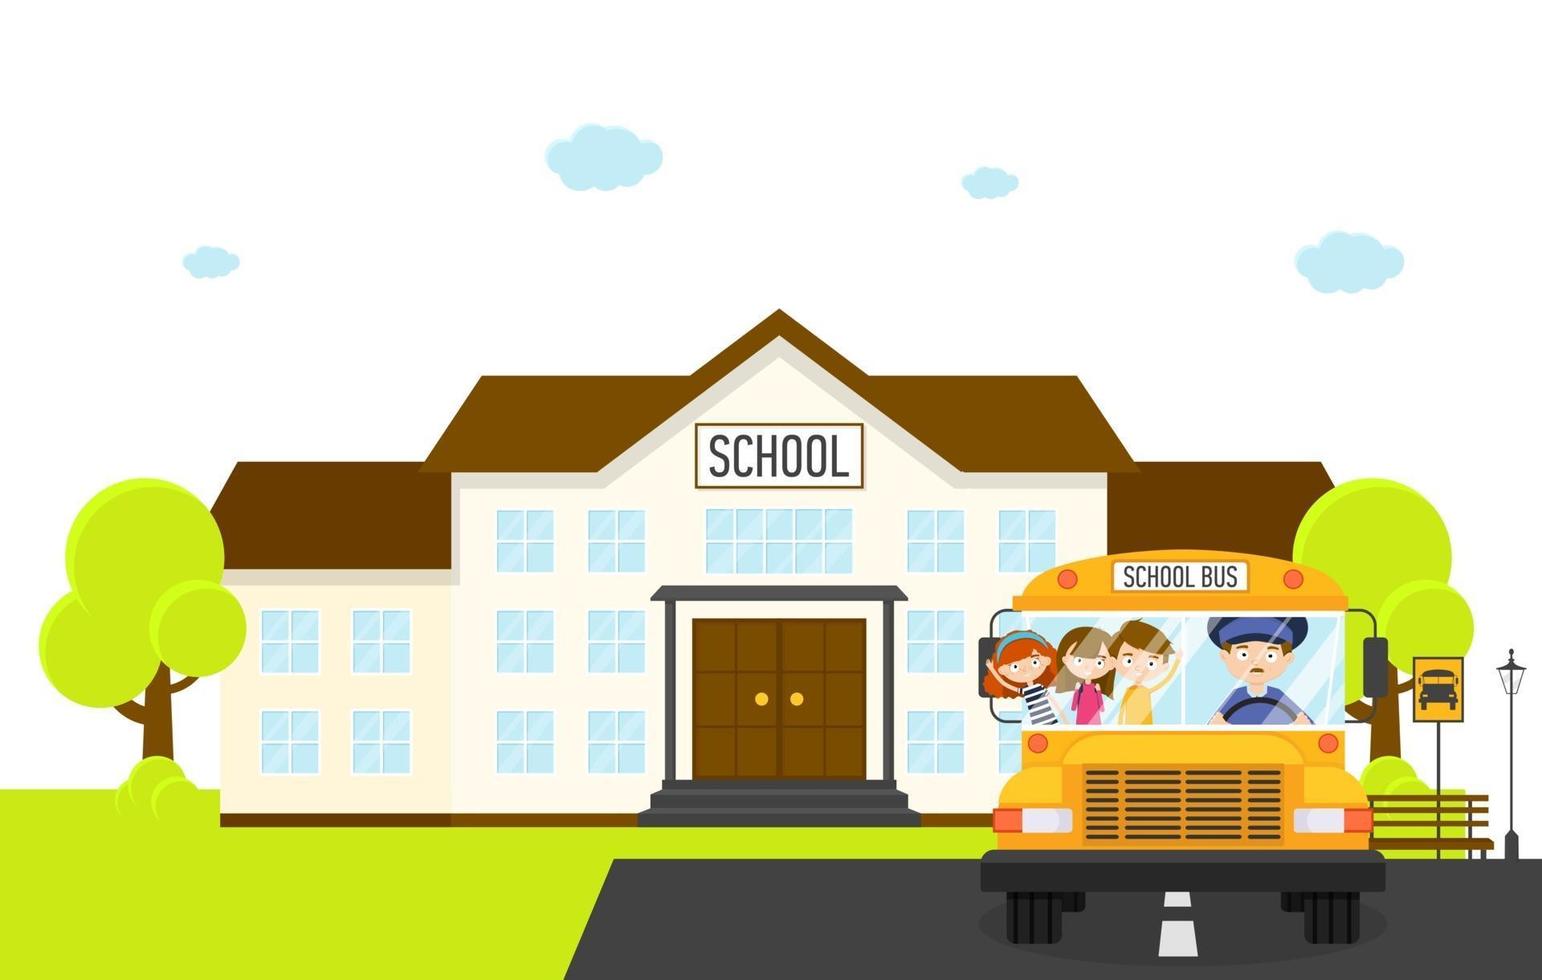 paesaggio scolastico con scuolabus e bambini, illustrazione vettoriale